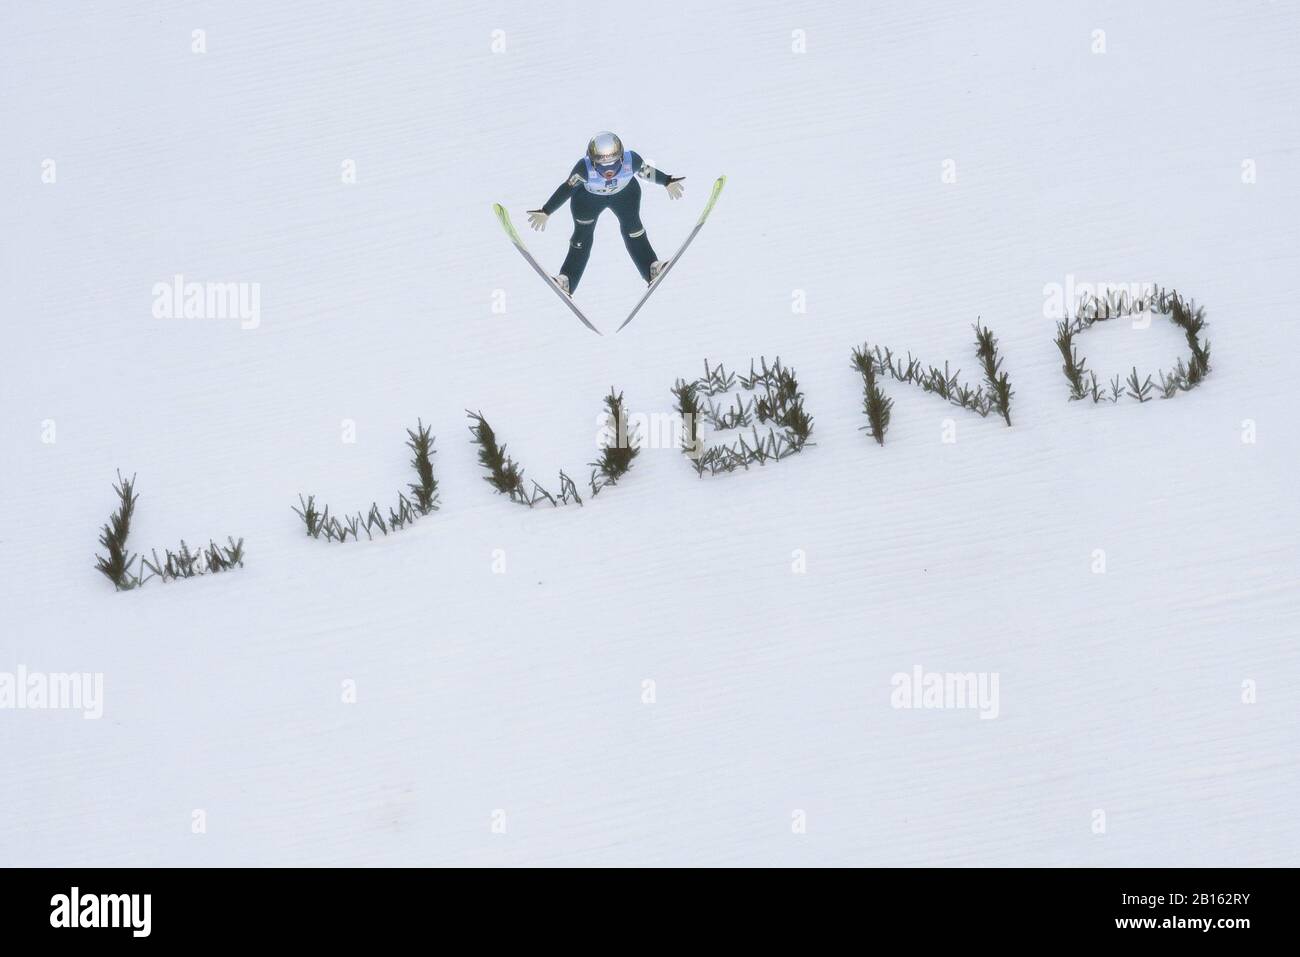 Katra Komar della Slovenia compete durante l'evento della FIS Ski Jumping World Cup Ljubno 2020 Team il 22 febbraio 2020 a Ljubno, in Slovenia. (Foto Di Rok Rakun/Pacific Press/Sipa Usa) Foto Stock